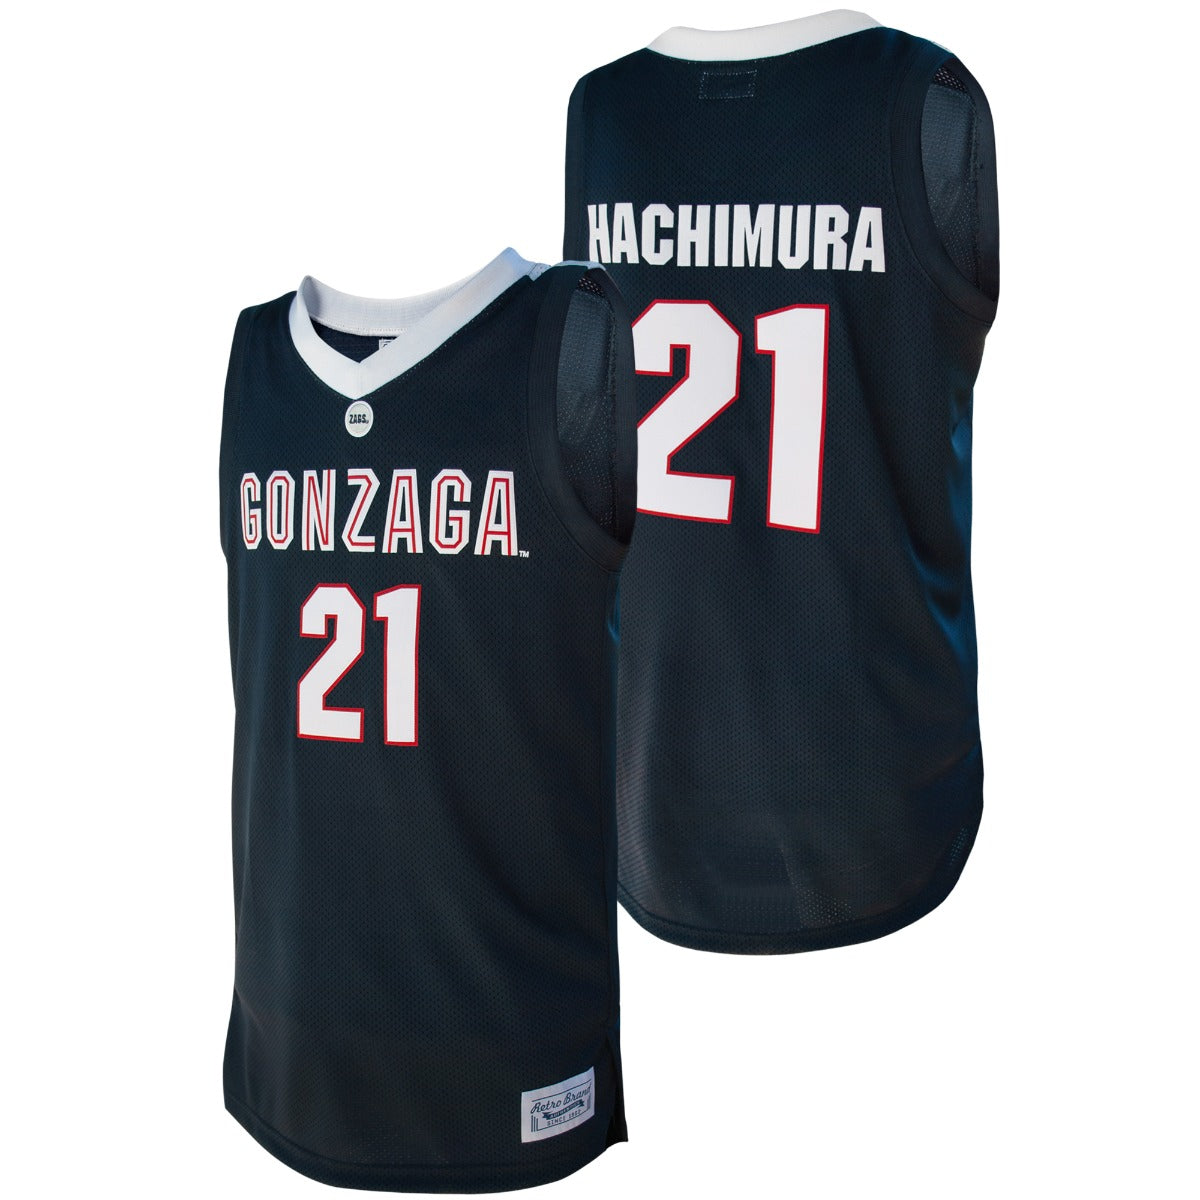 gonzaga throwback jersey